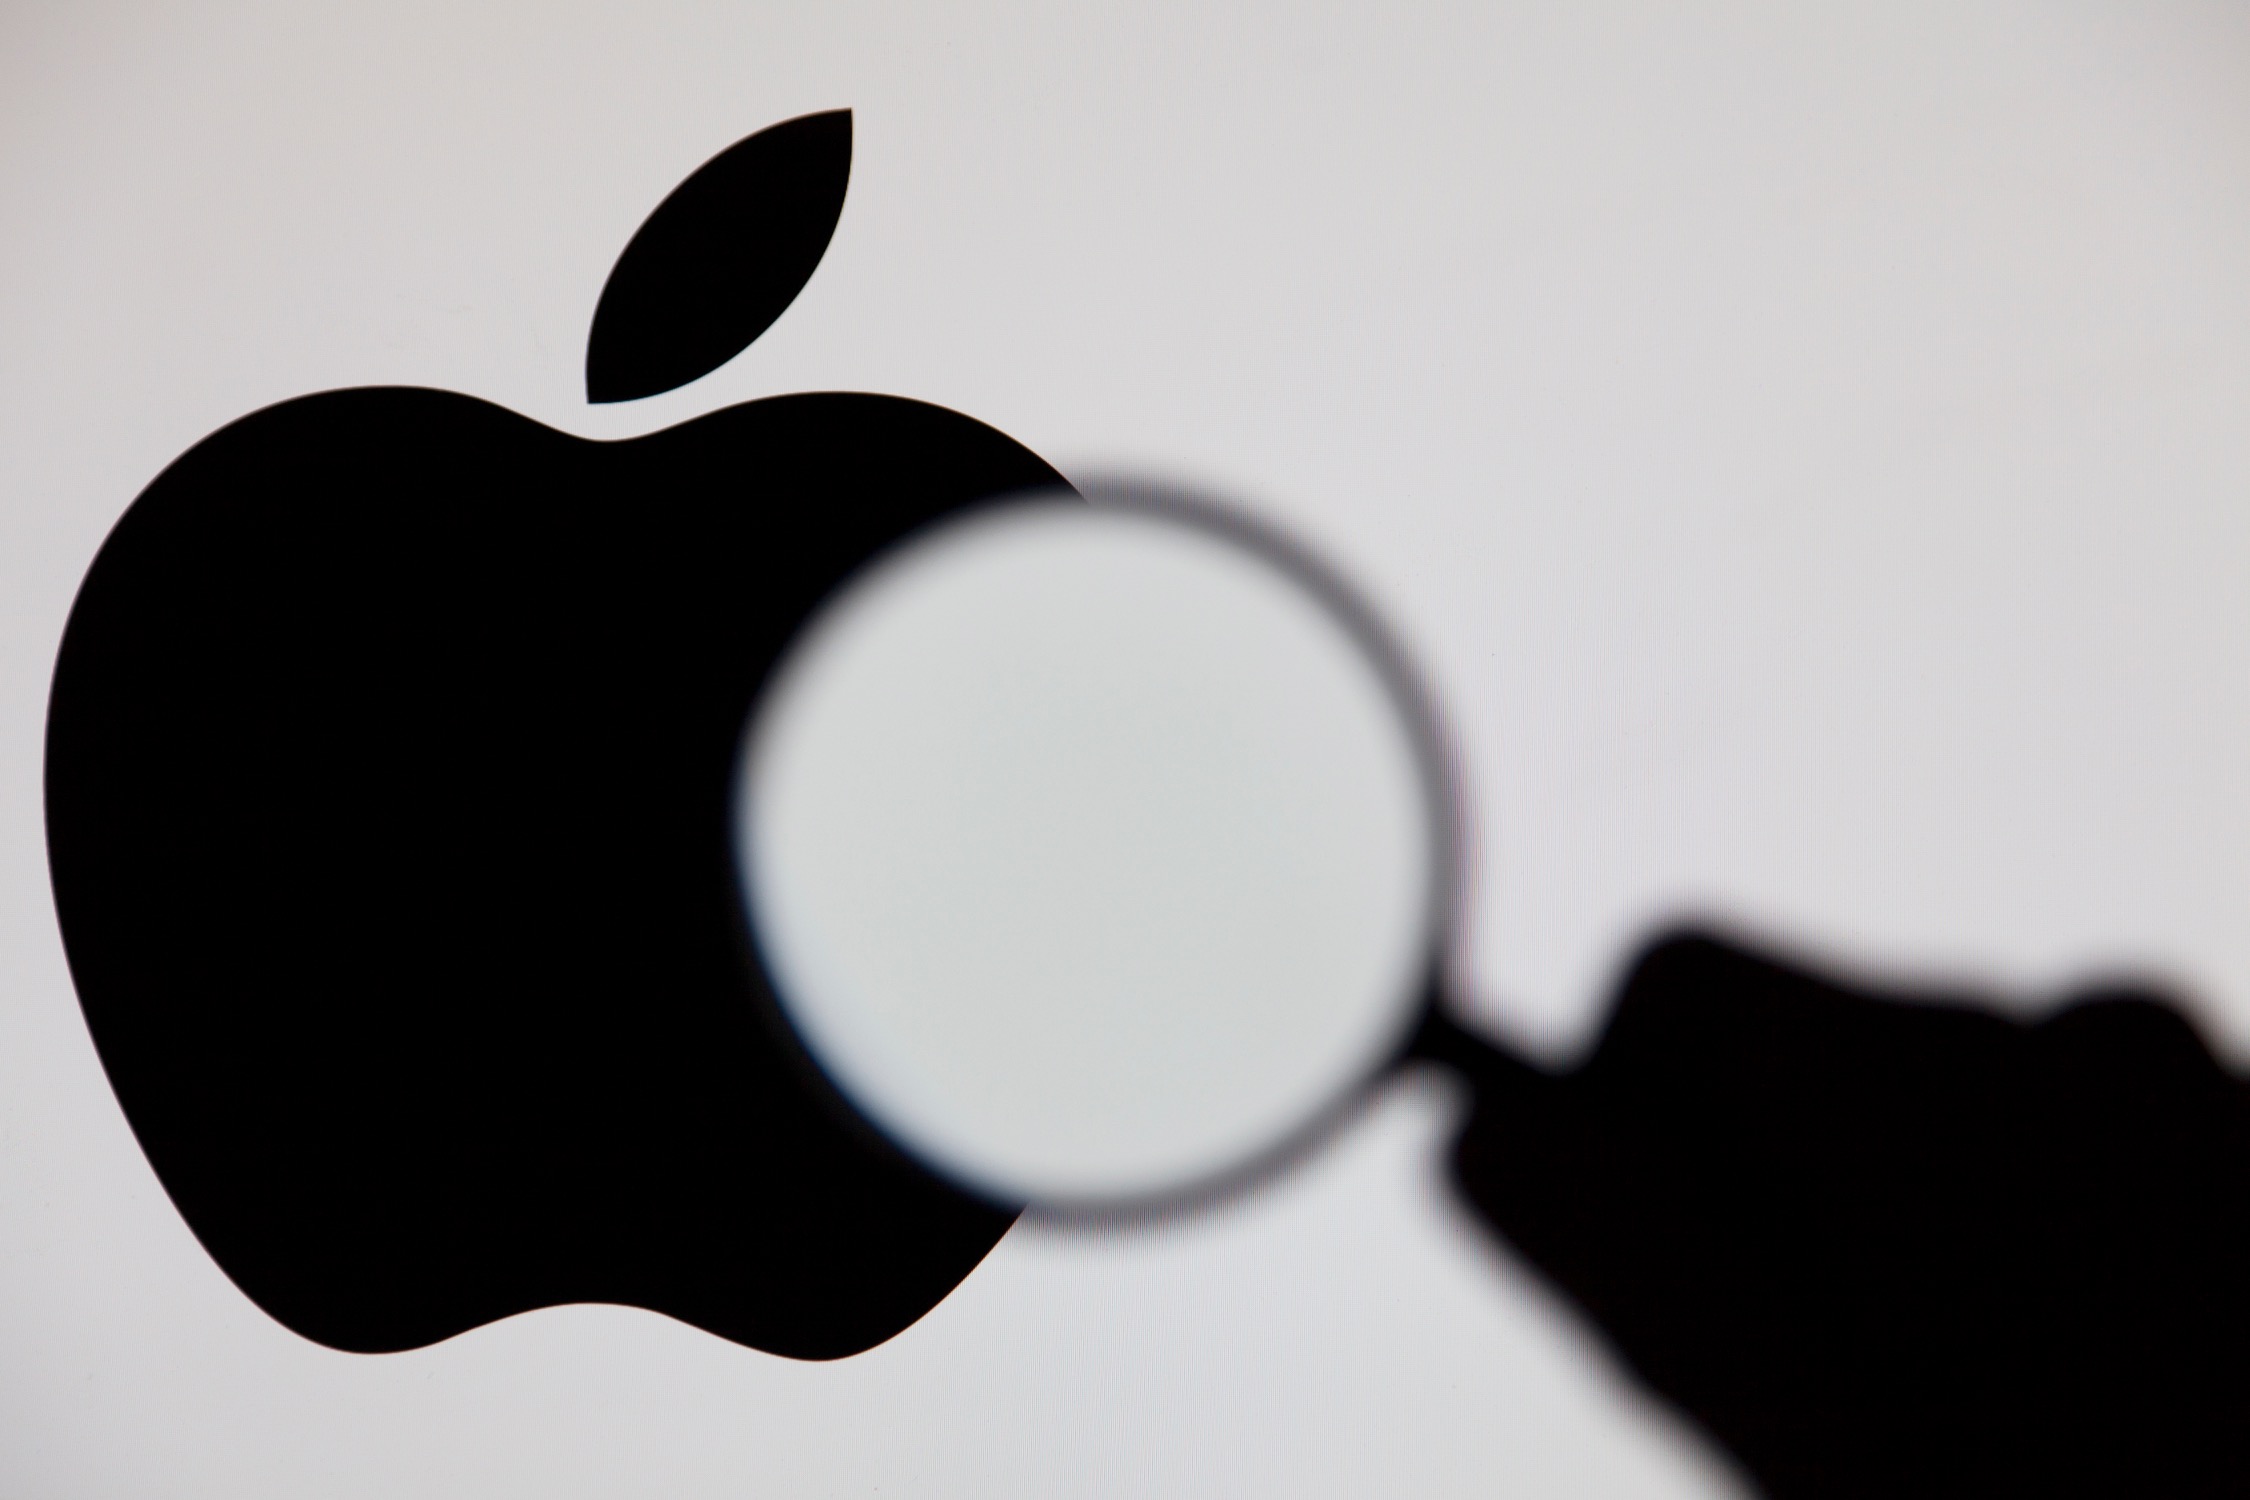 Ettevõtted, sealhulgas Apple, pakuvad välja uusi privaatsuseeskirju